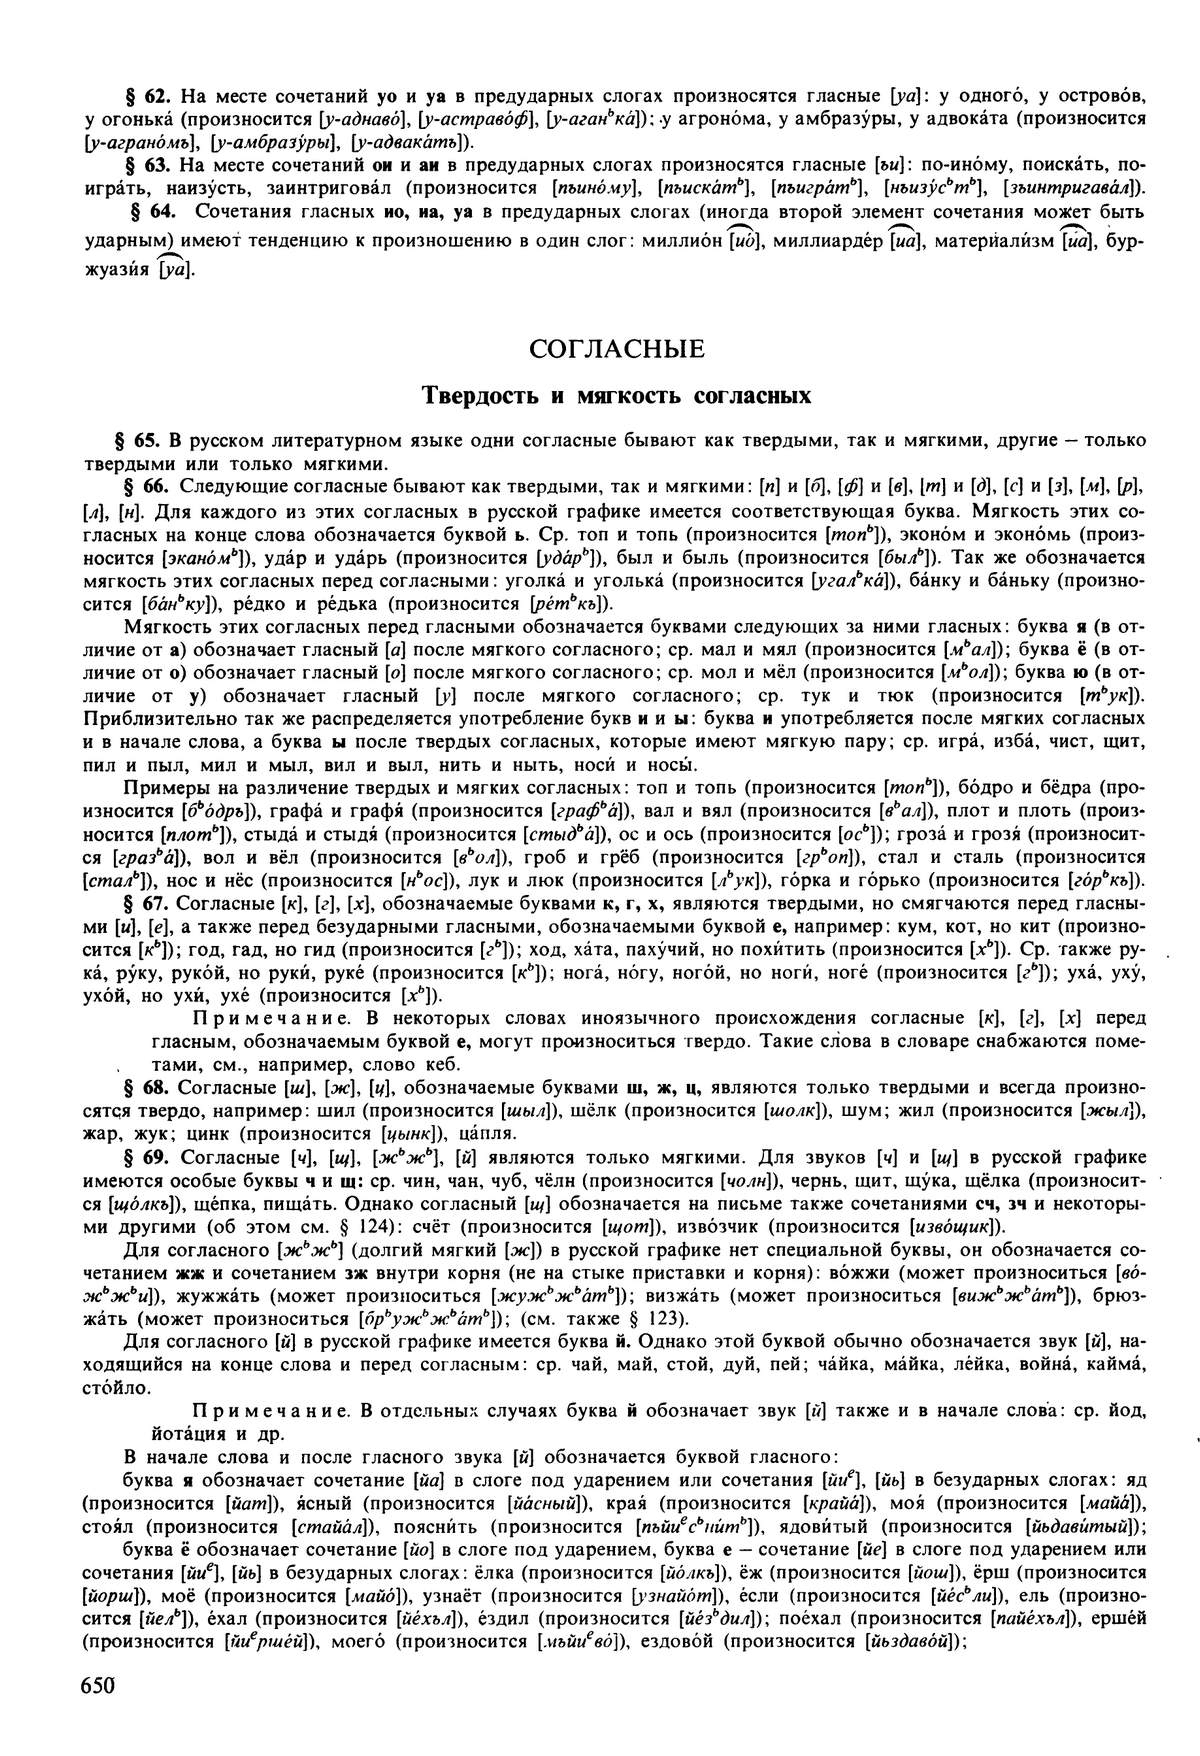 Фотокопия pdf / скан страницы 650 орфоэпического словаря под редакцией Аванесова (5 издание, 1989 год)